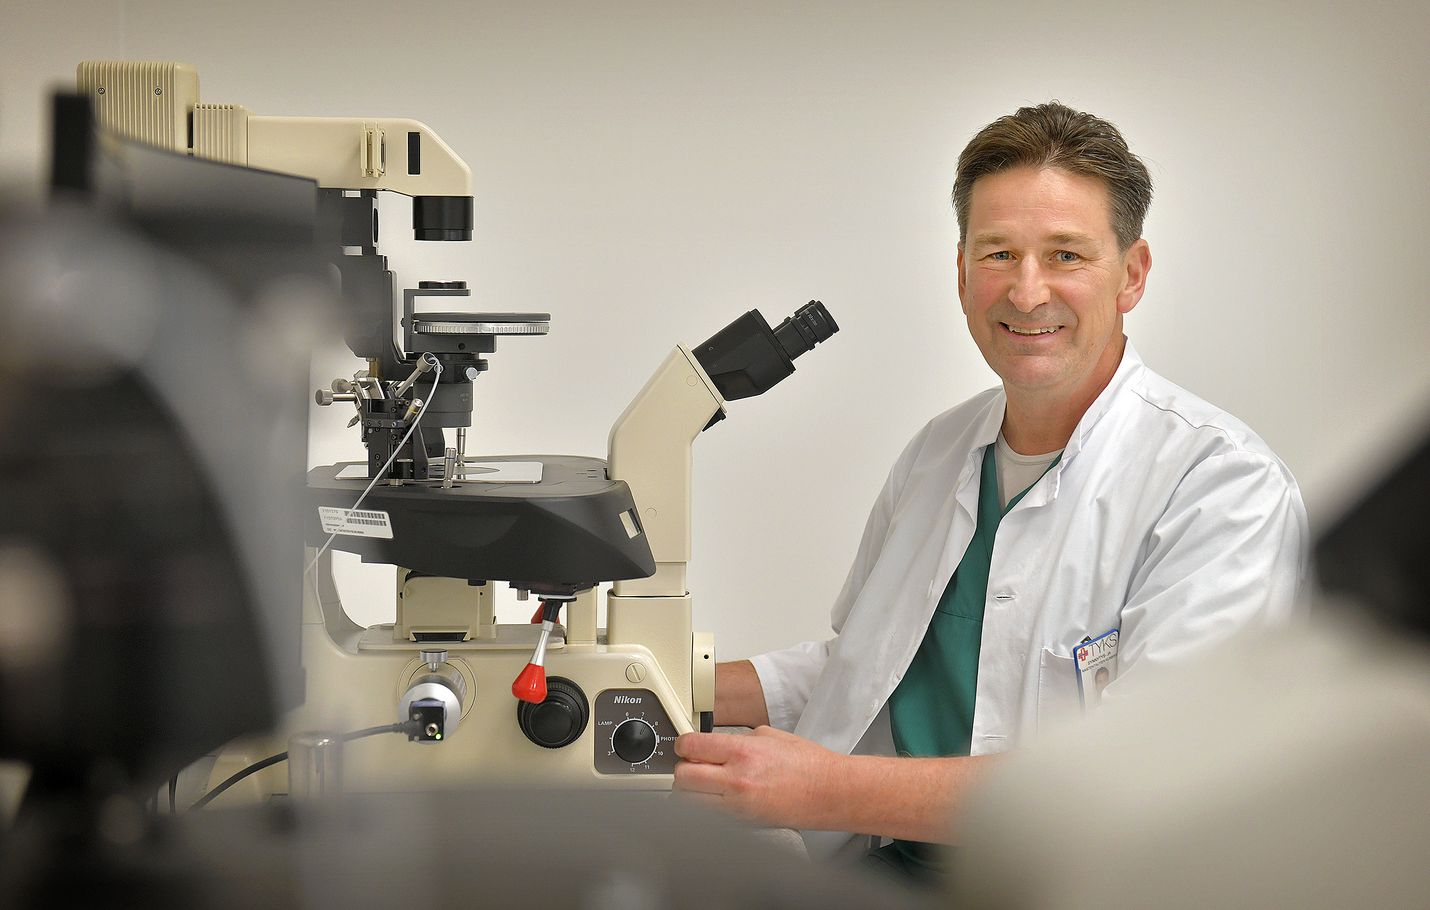 IVF-biologi Harri Mankosen työkaluja ovat muun muassa erilaiset mikroskoopit. Työ vaatii tarkkaa käden ja silmän yhteispeliä. Pienikin virhe voi tuhota sukusolut hetkessä.